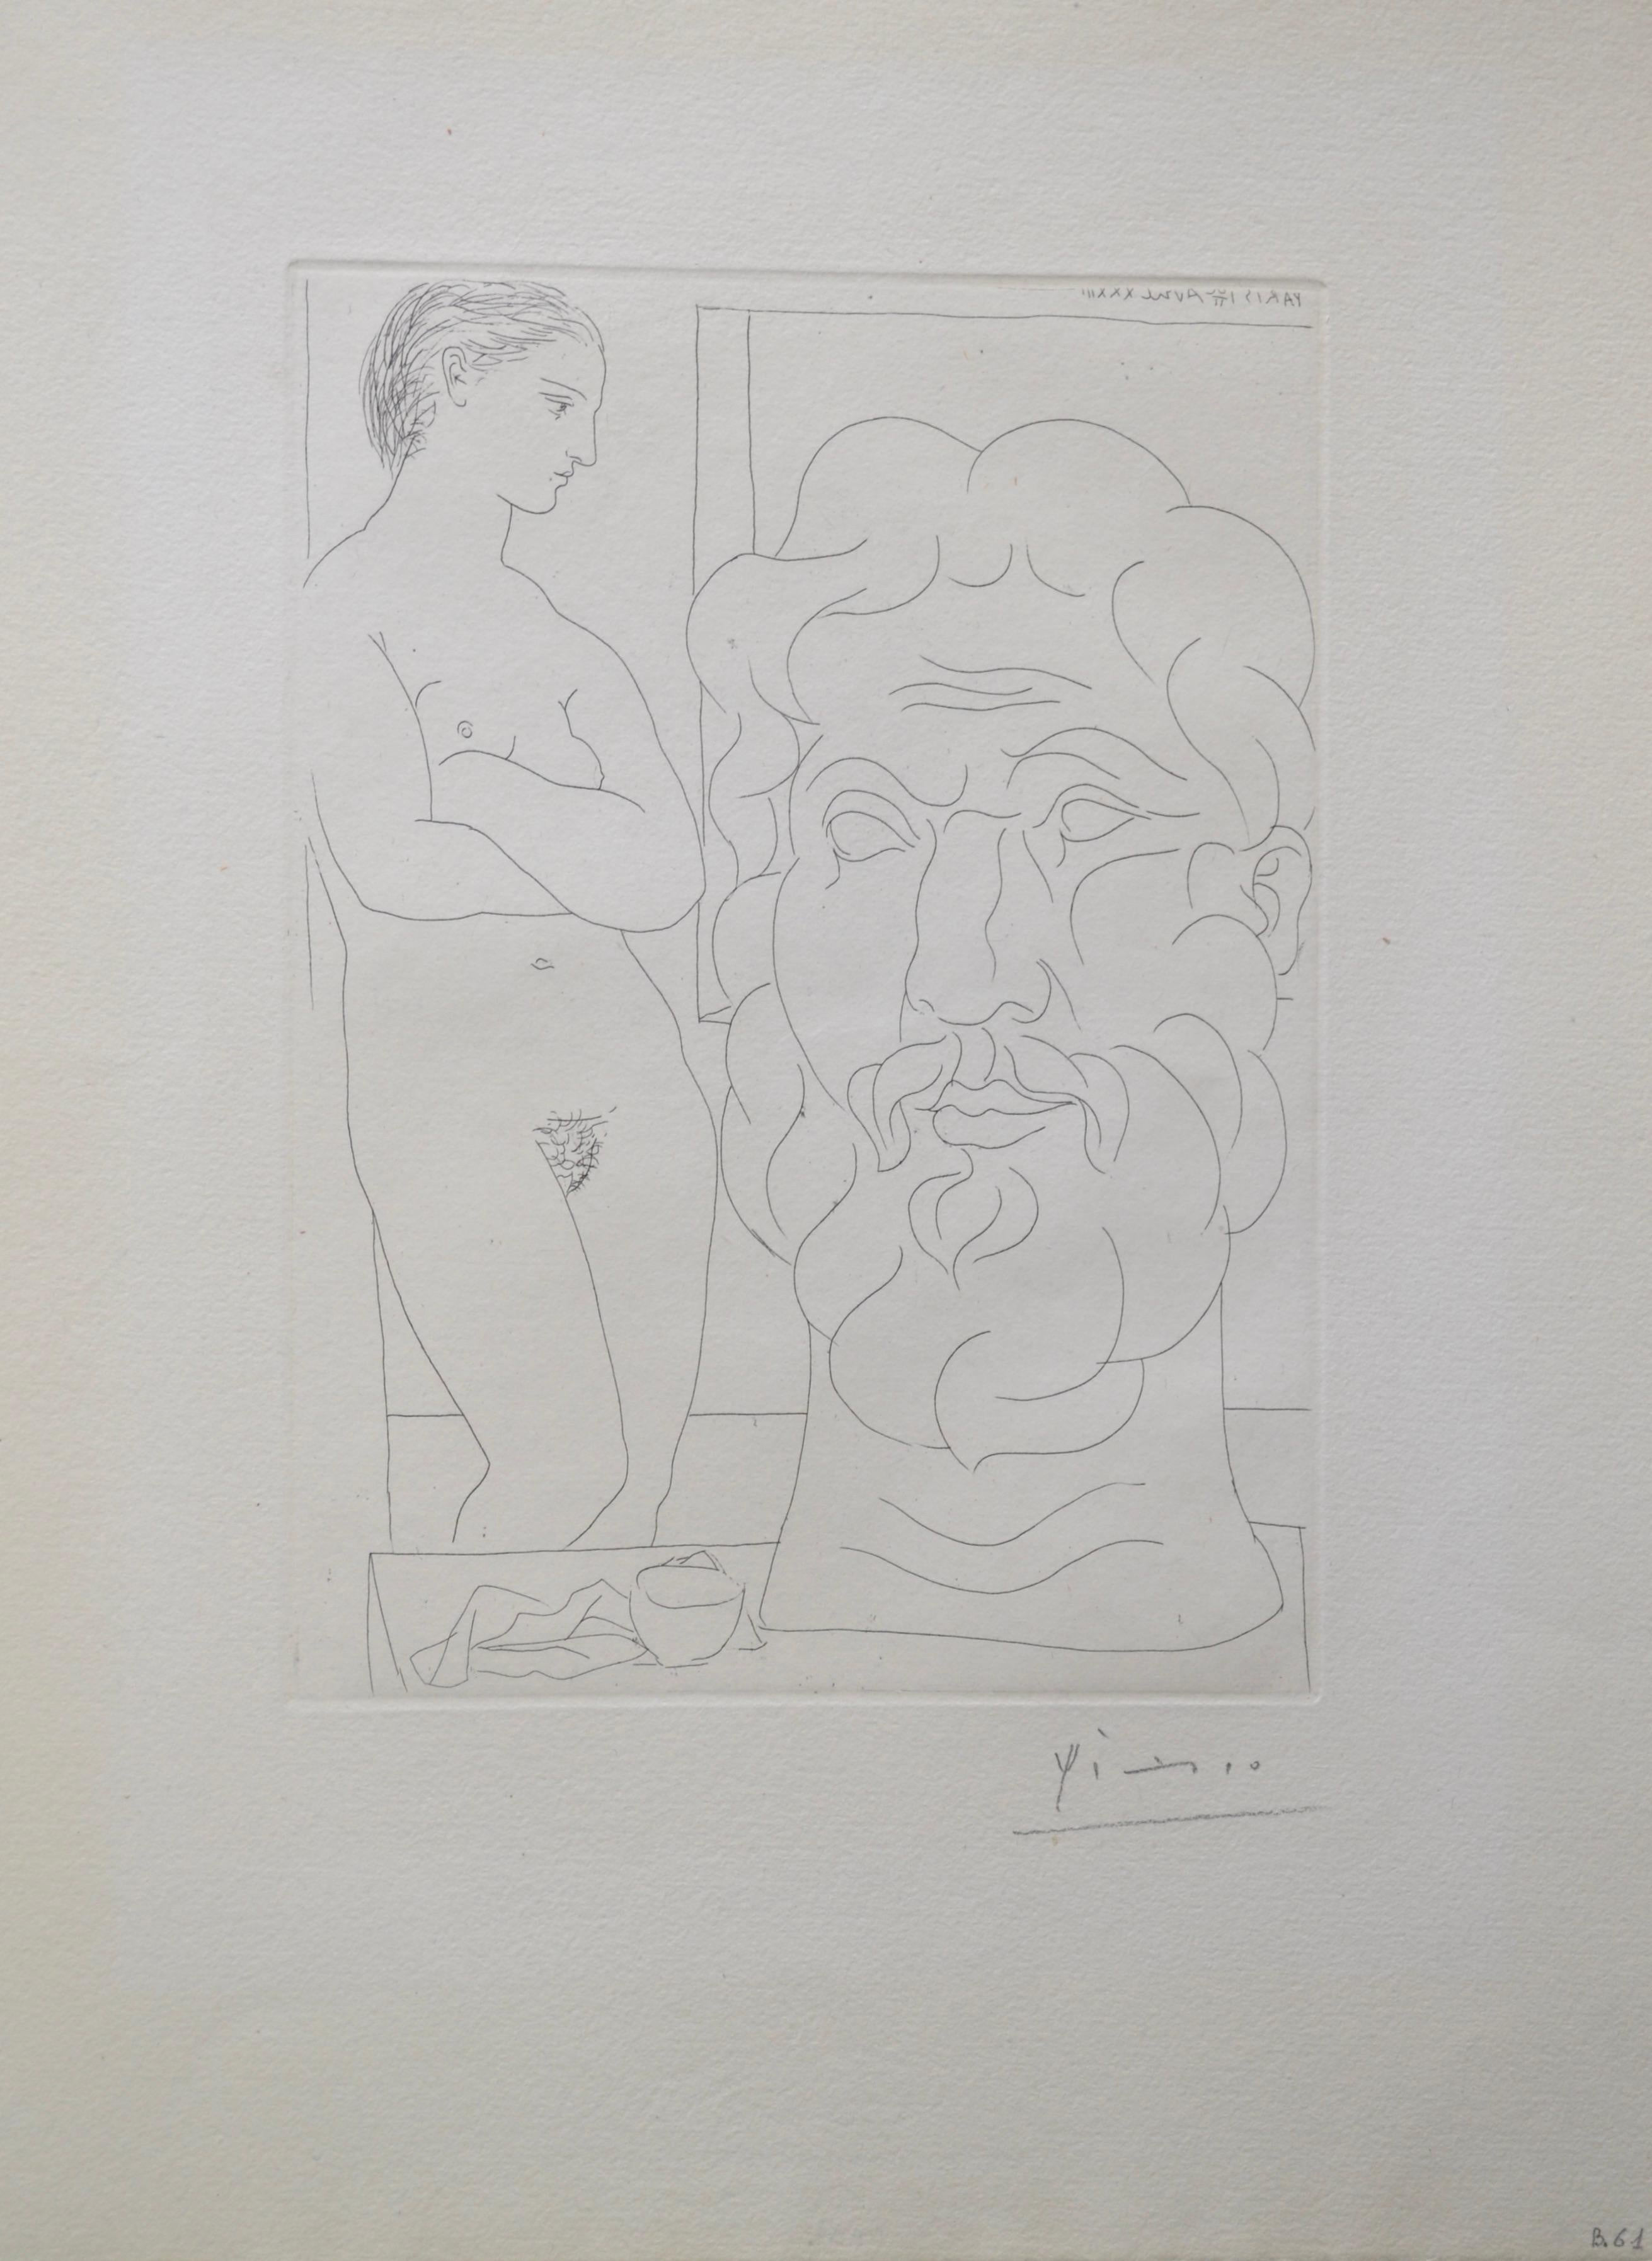 Modèle et Grande T�ête Sculptée (B170 Vollard) - Print de Pablo Picasso